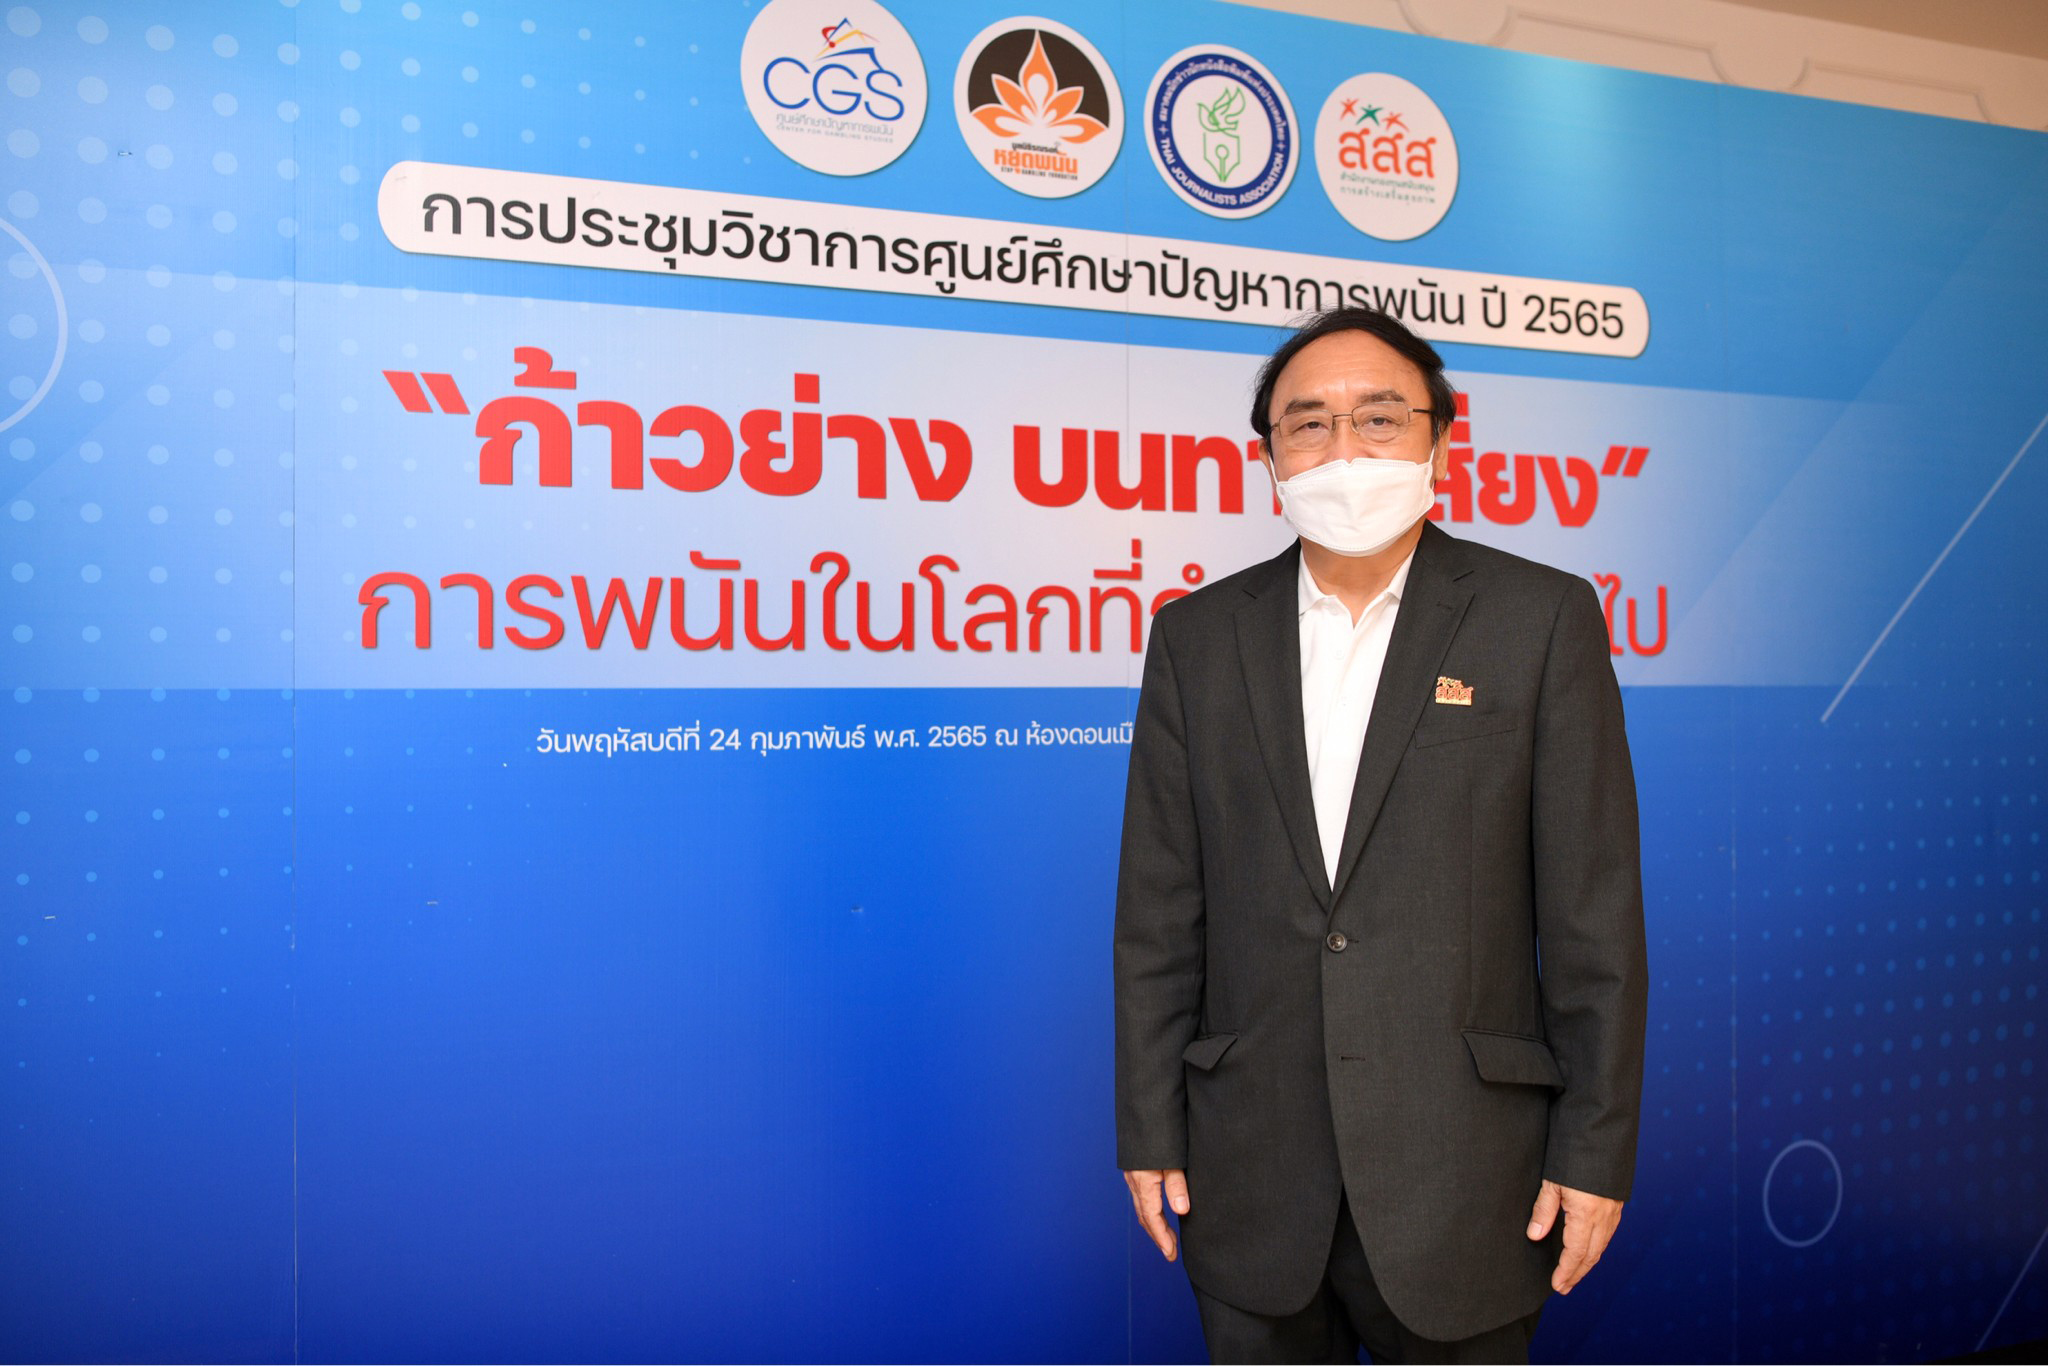 ถกปัญหาพนันกับสังคมไทย เร่งปรับปรุงกฎหมาย สร้างเกราะป้องกันเด็กและเยาวชนรู้ทันภัยสื่อพนัน thaihealth